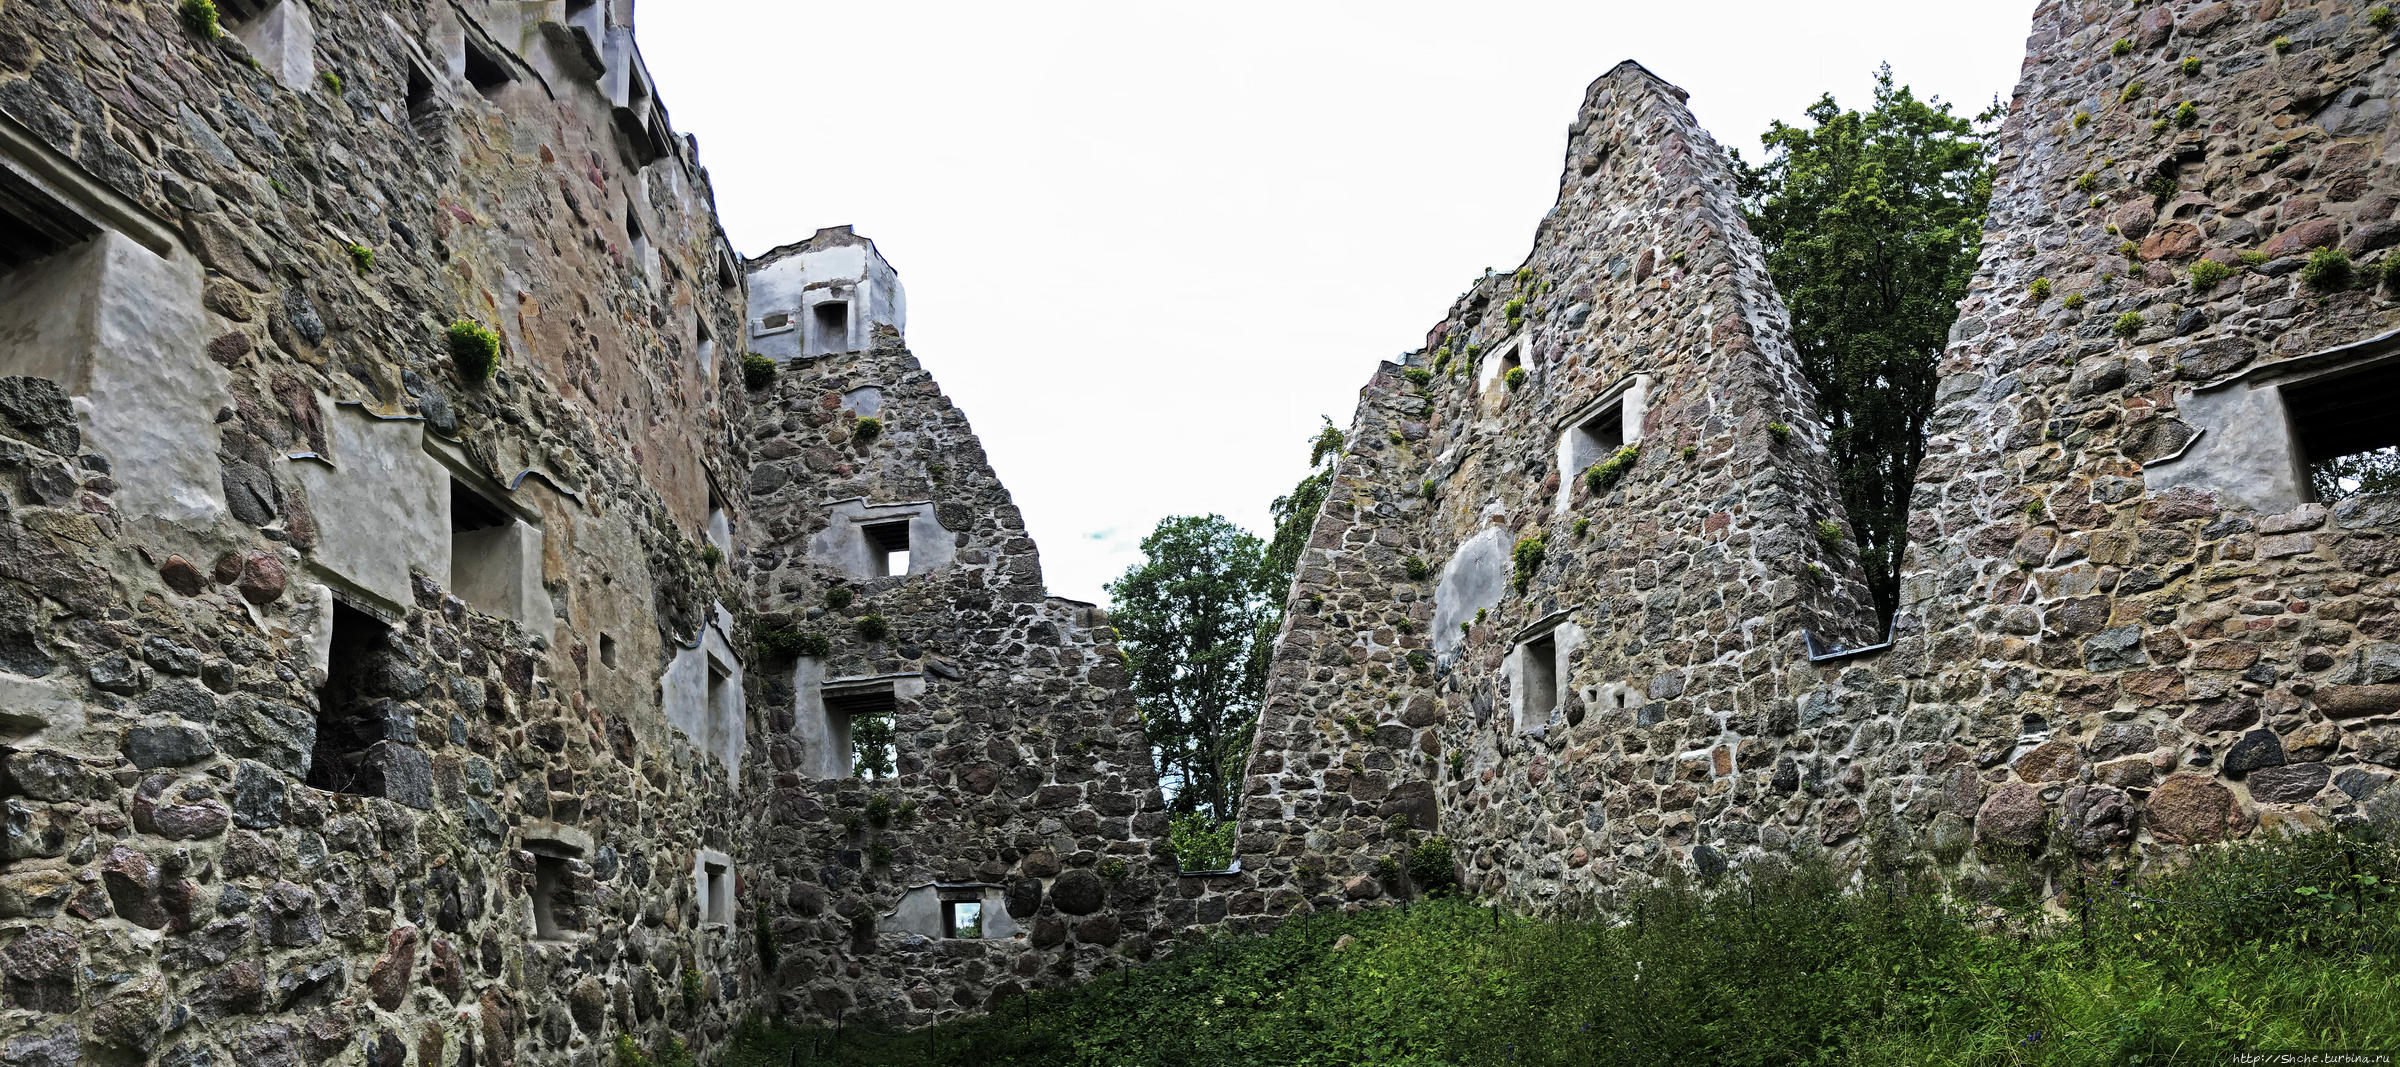 Руины замка Бергквара Бергквара, Швеция